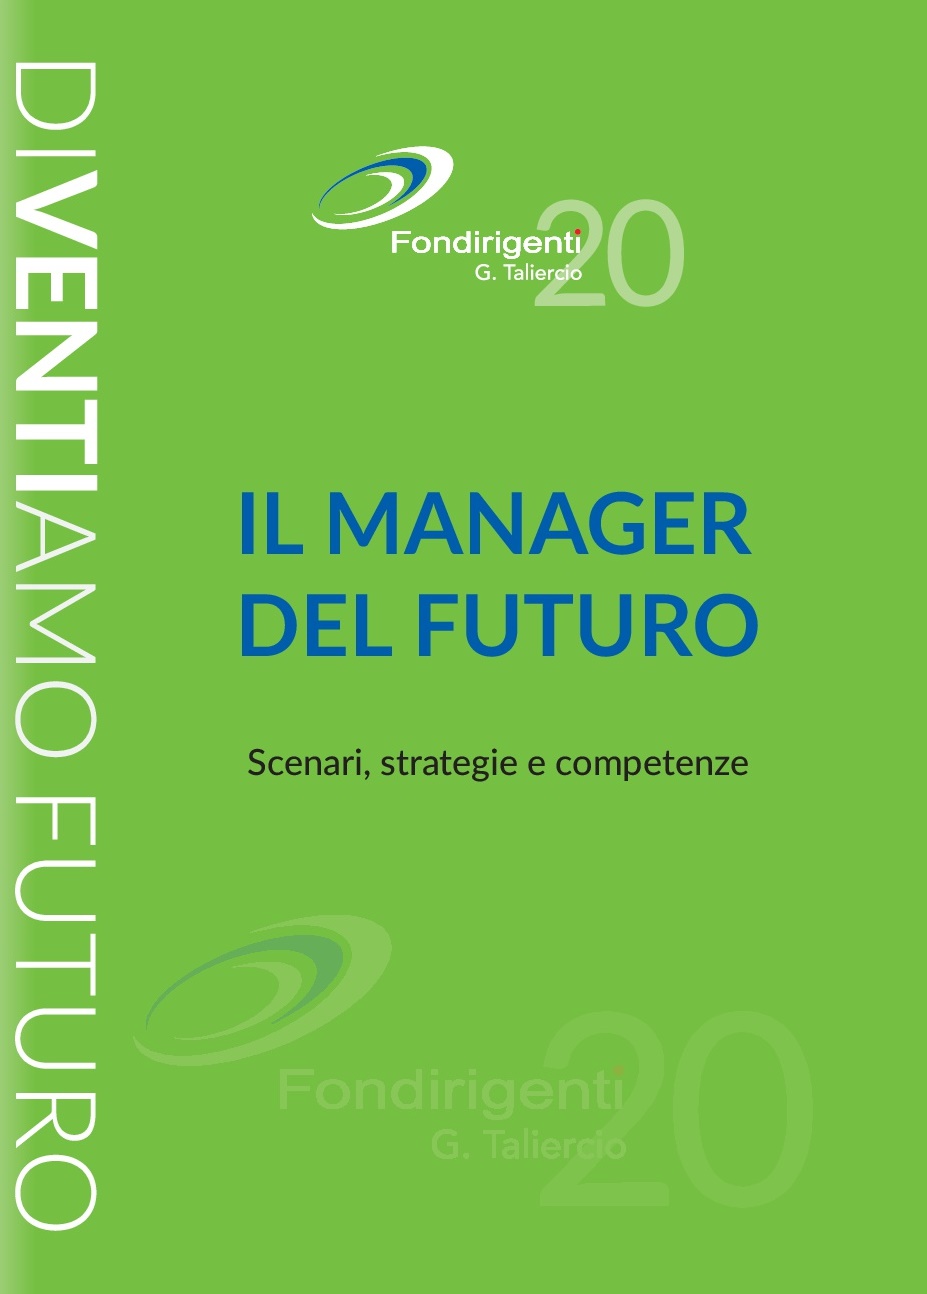 Al momento stai visualizzando “Il Manager del Futuro”, intervento del Presidente Avenia sull’evoluzione del ruolo manageriale